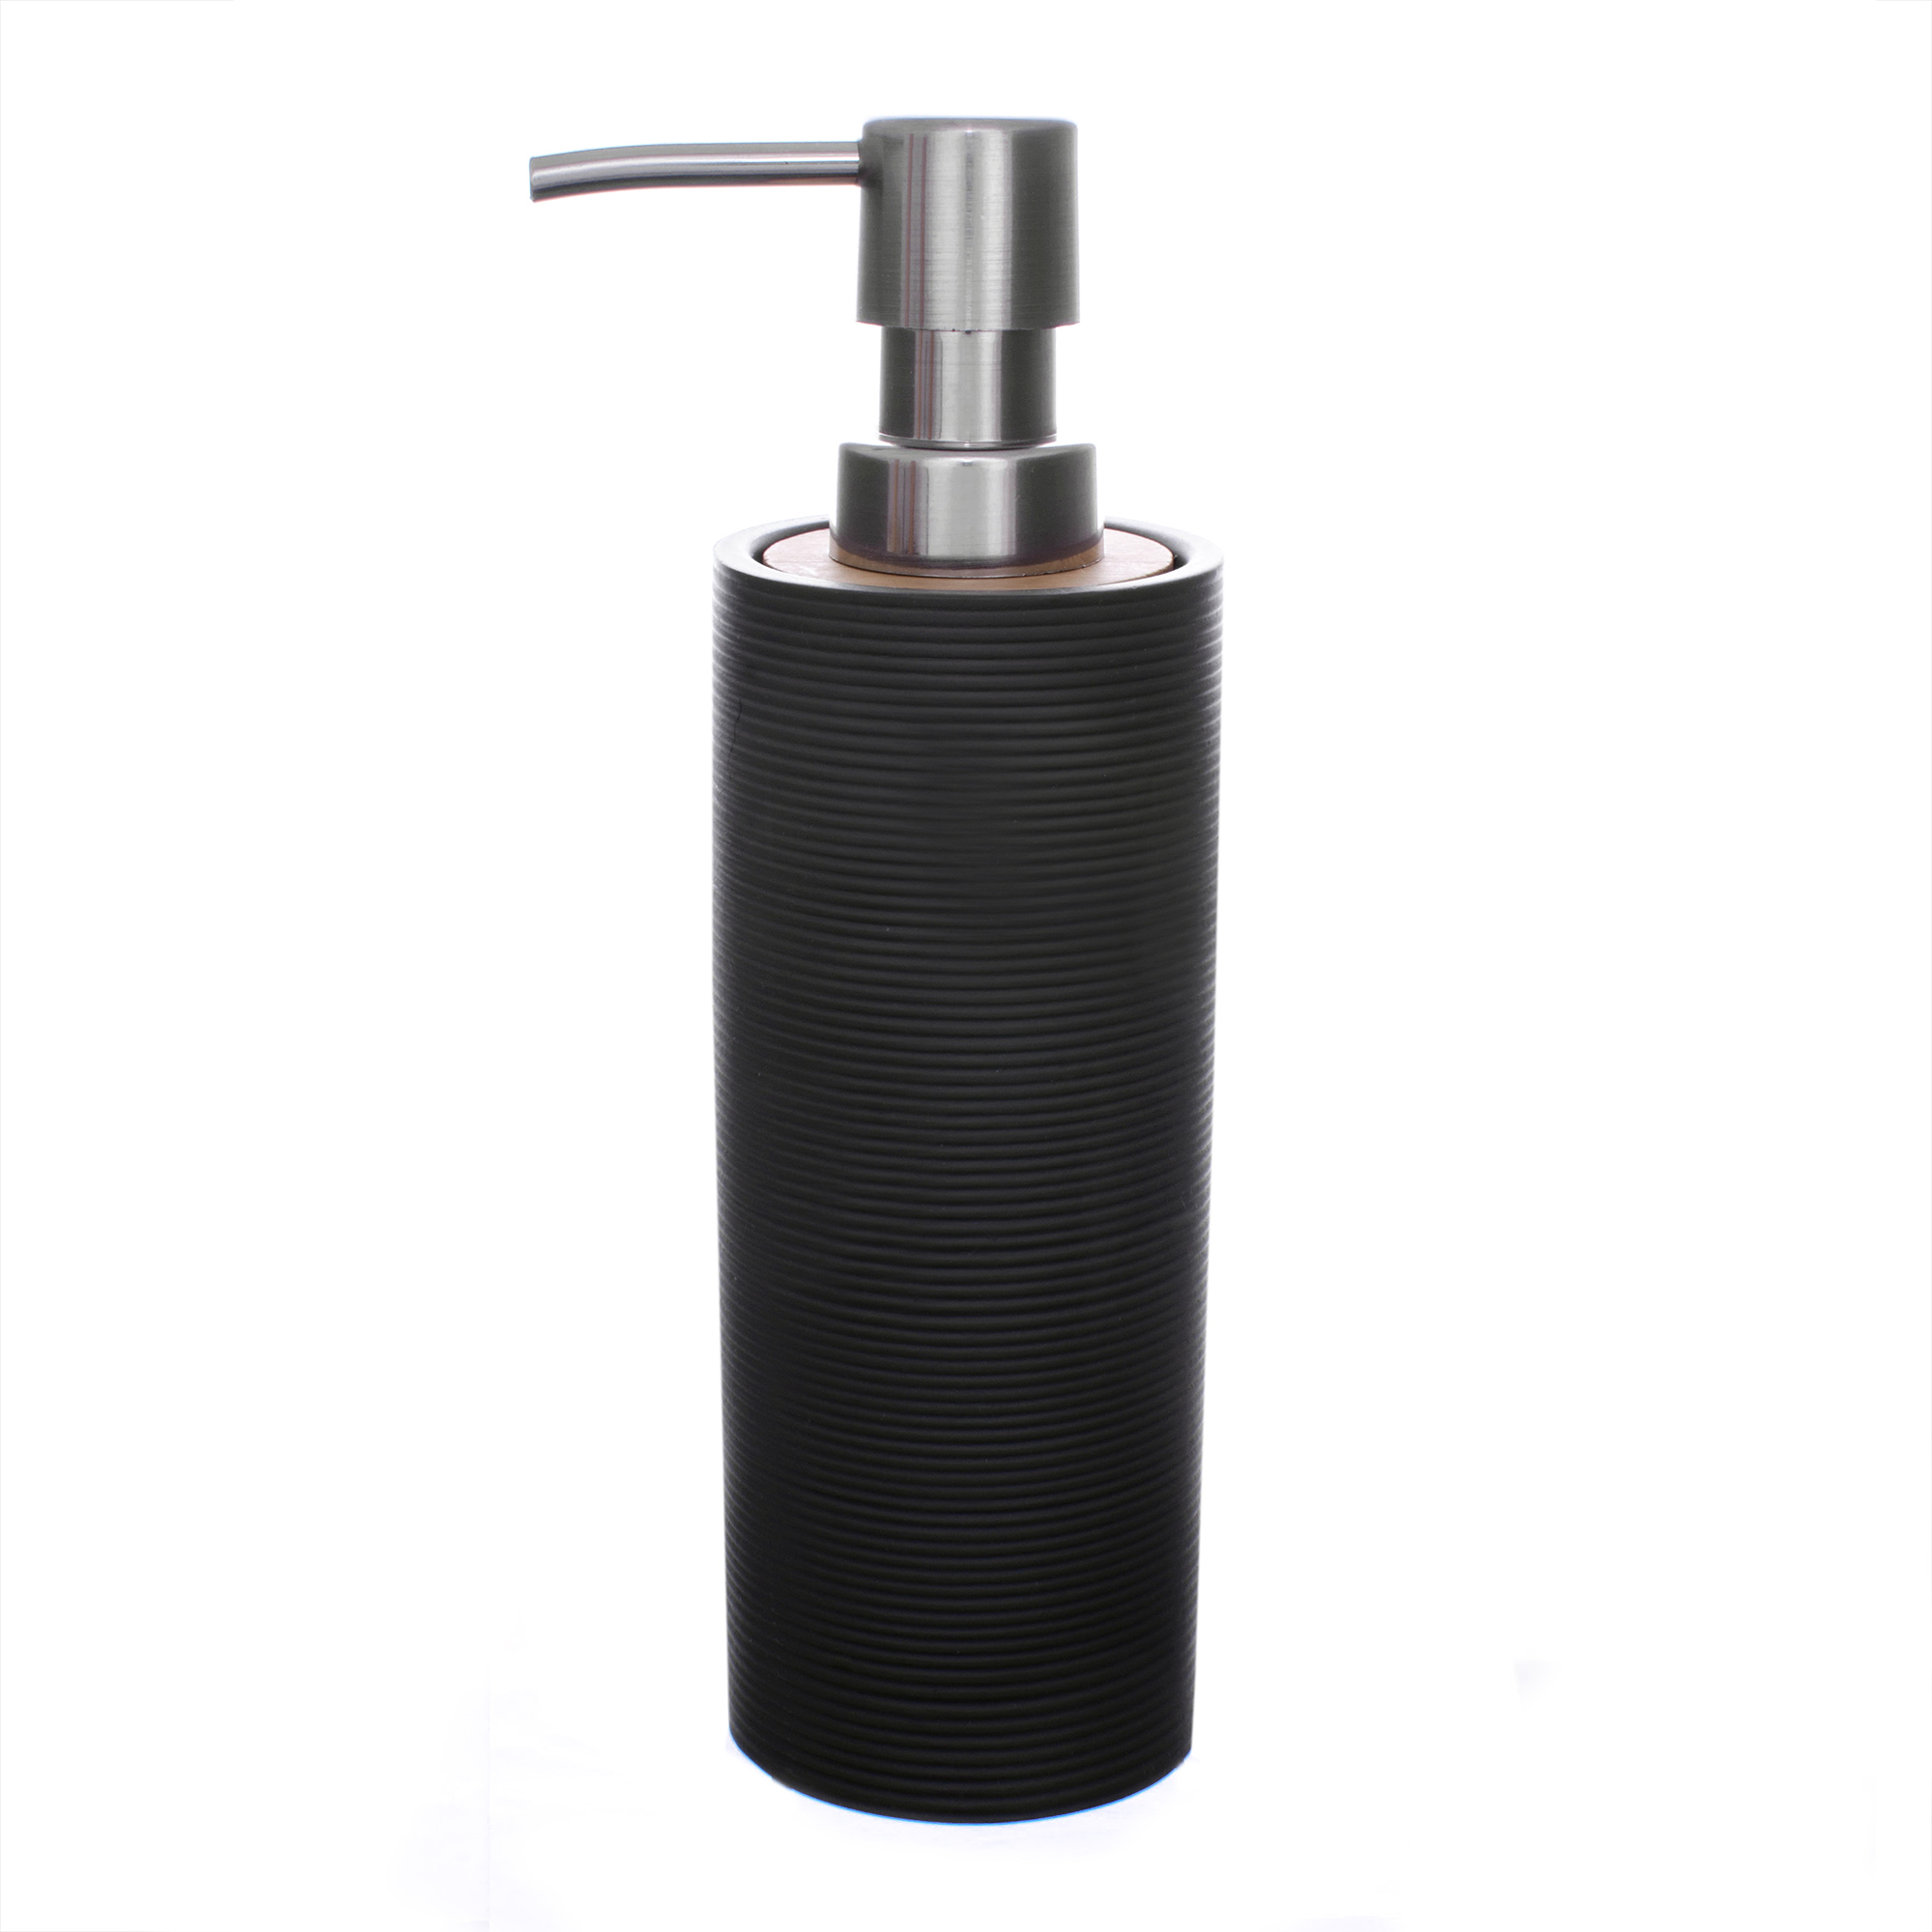 Дозатор для жидкого мыла Roller серый Ridder дозатор для жидкого мыла ridder roller 2105507 серый